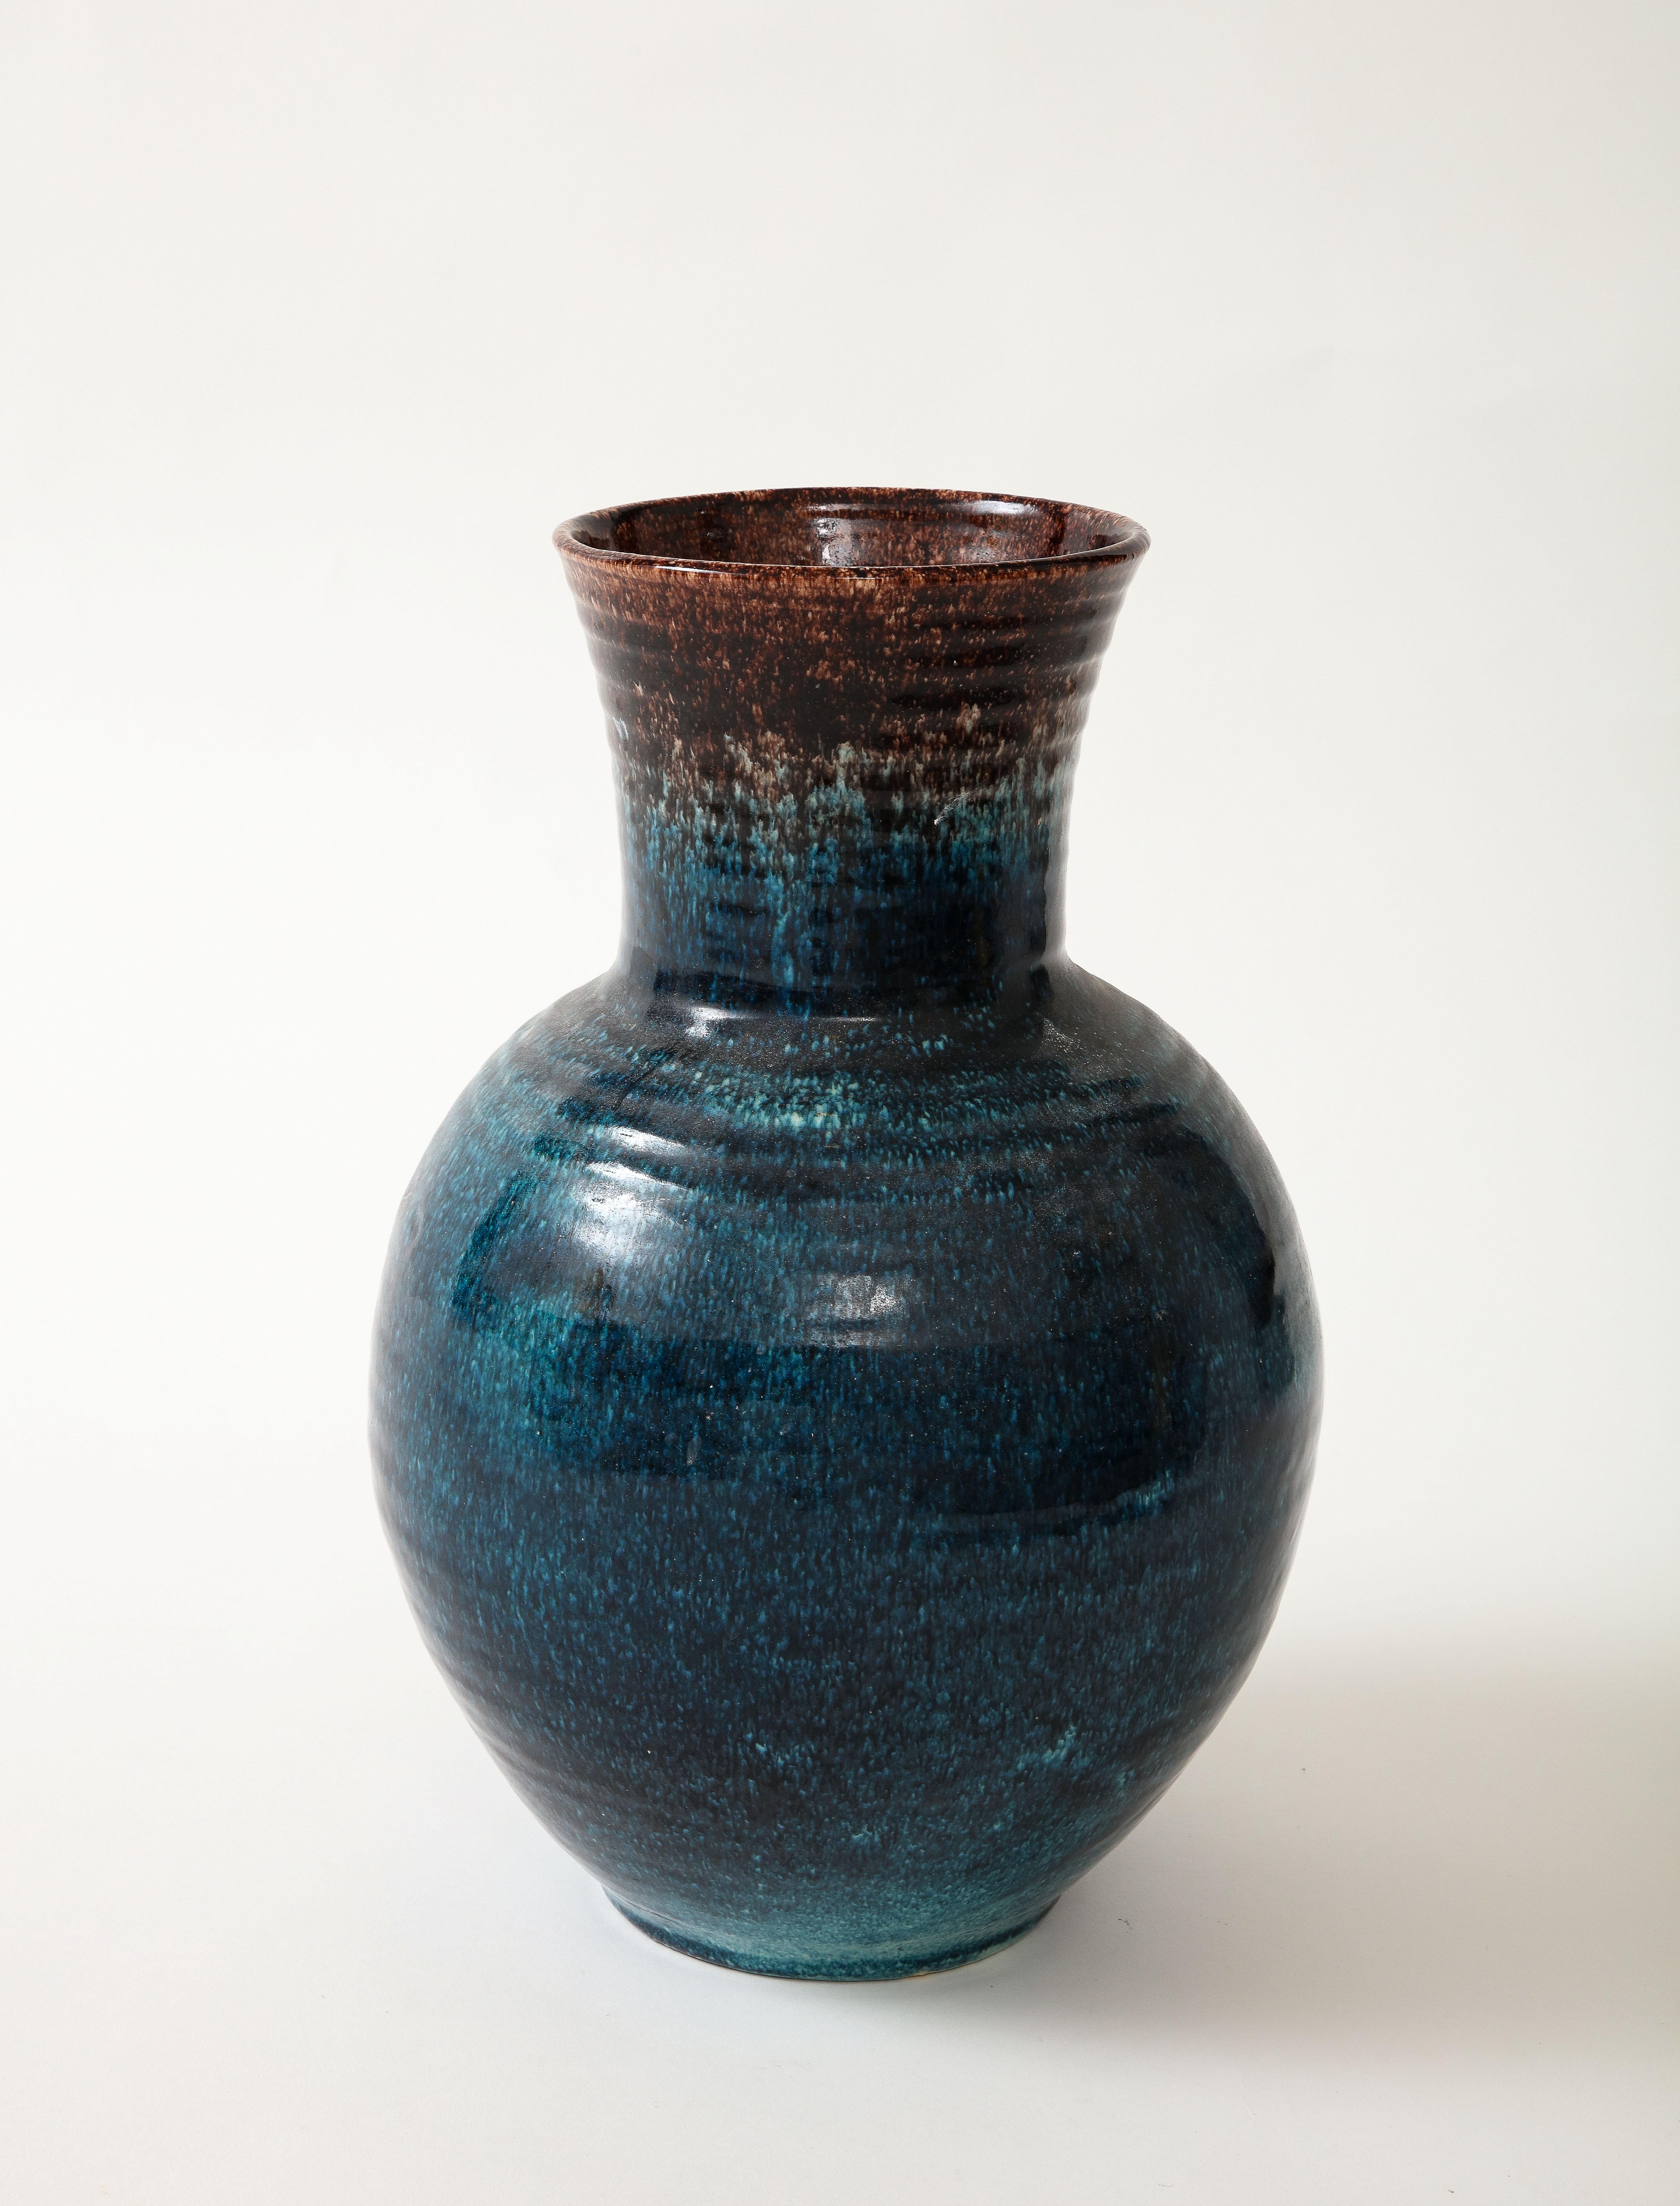 Un vase en céramique dans une belle glaçure bleue et brune produite par Accolay Pottery.  Fondée dans les années 1950 à Accolay,  En France, le Studio Accolay s'est fait connaître en produisant des boutons pour la collection de Christian Dior.  Ce